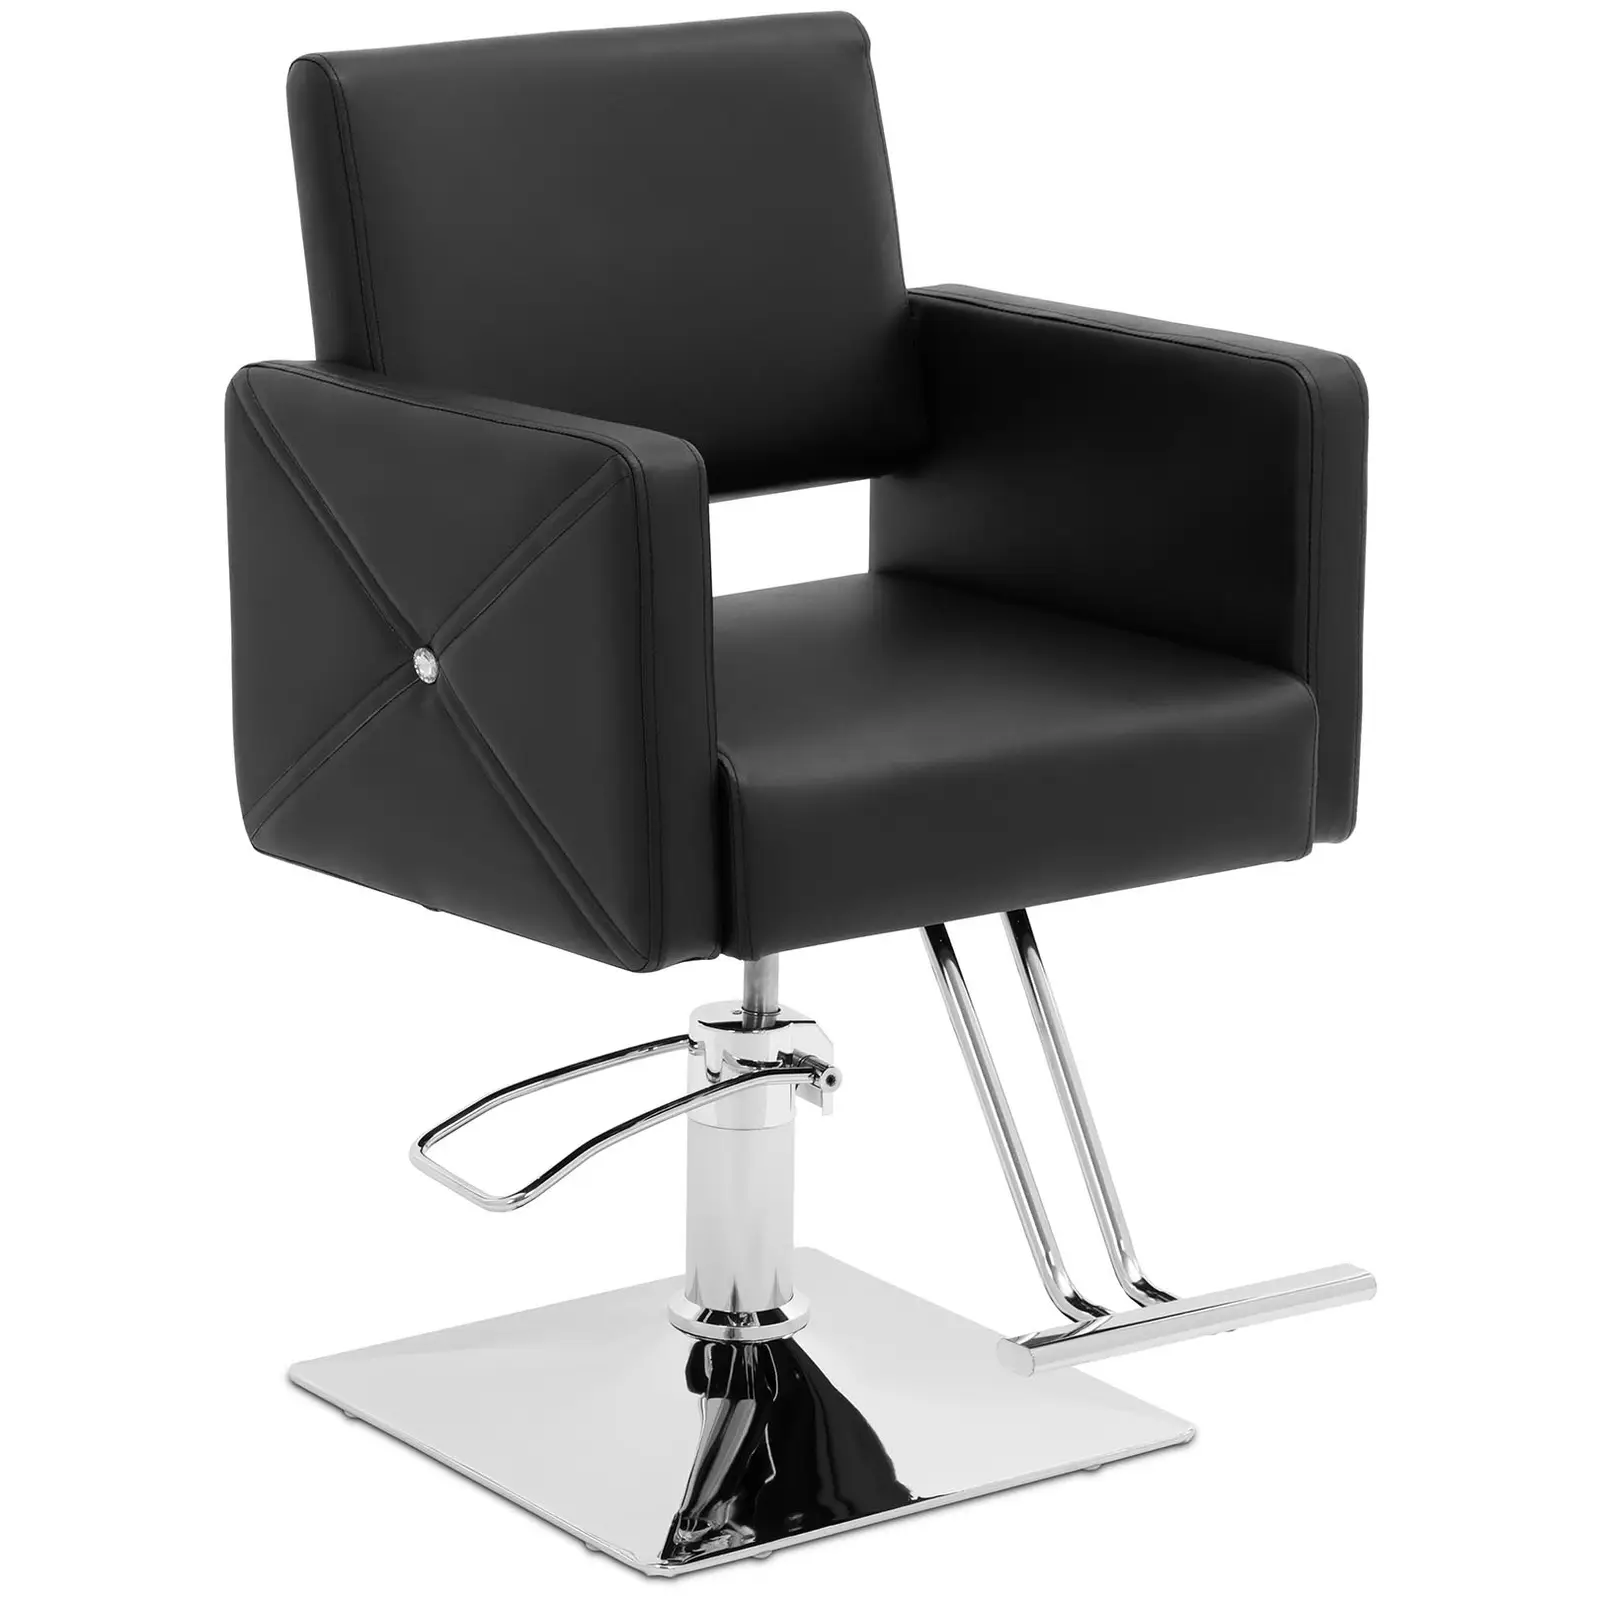 "Carlisle" salono kėdė su atramomis kojoms - sėdynės aukštis 45-55 cm - 150 kg - juoda